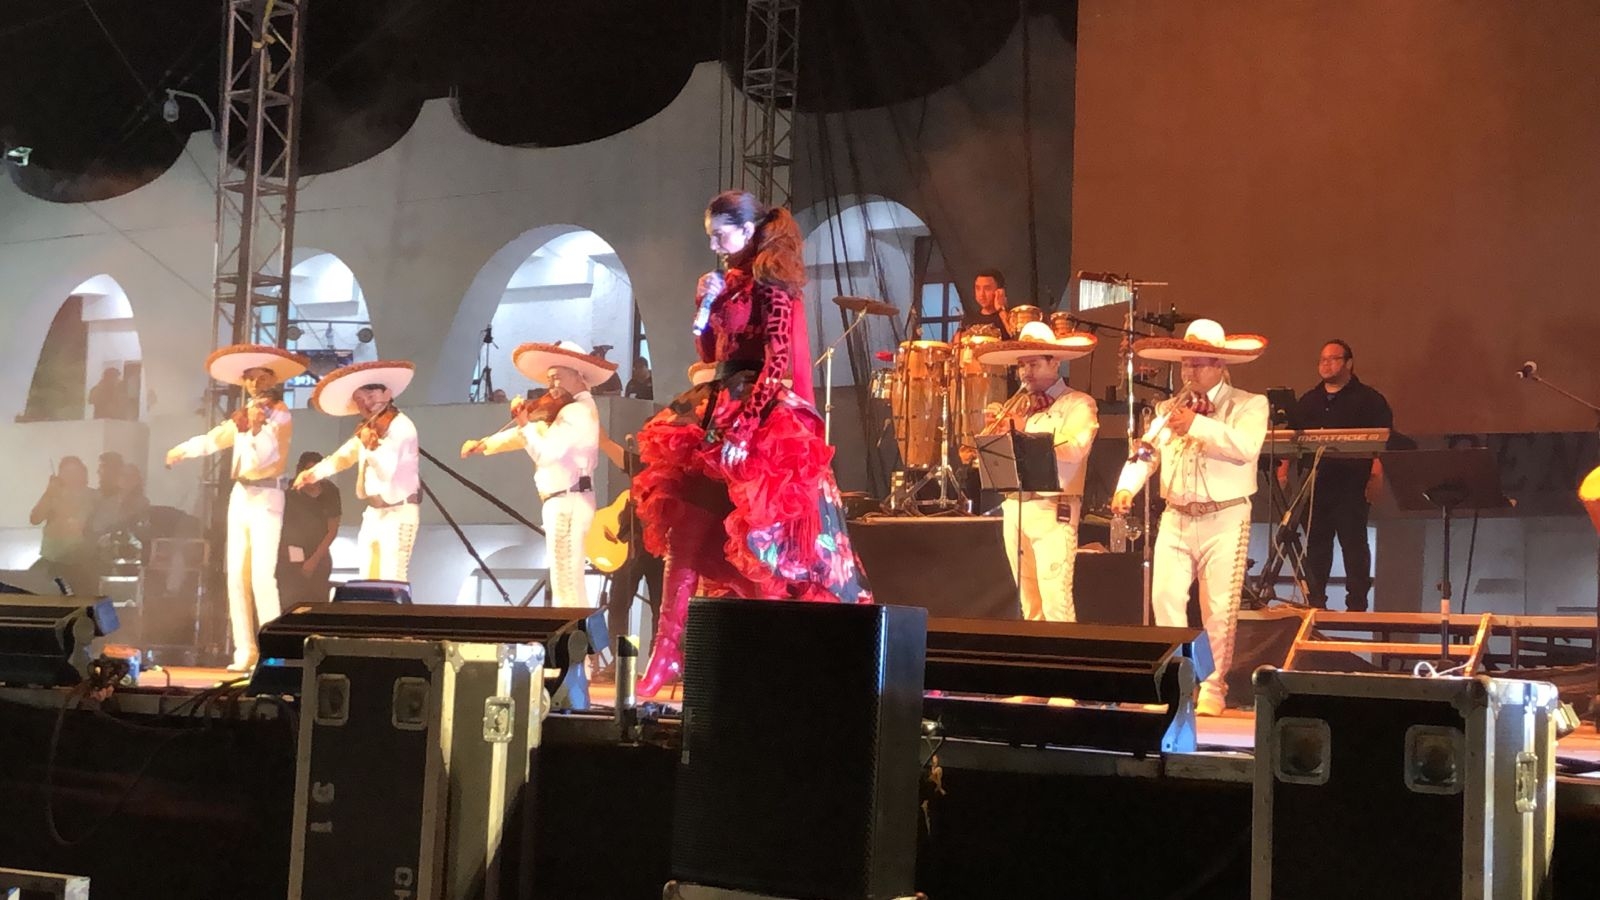 Ana Barbara Rompe récord de asistencia en el carnaval de Cancún: EN VIVO